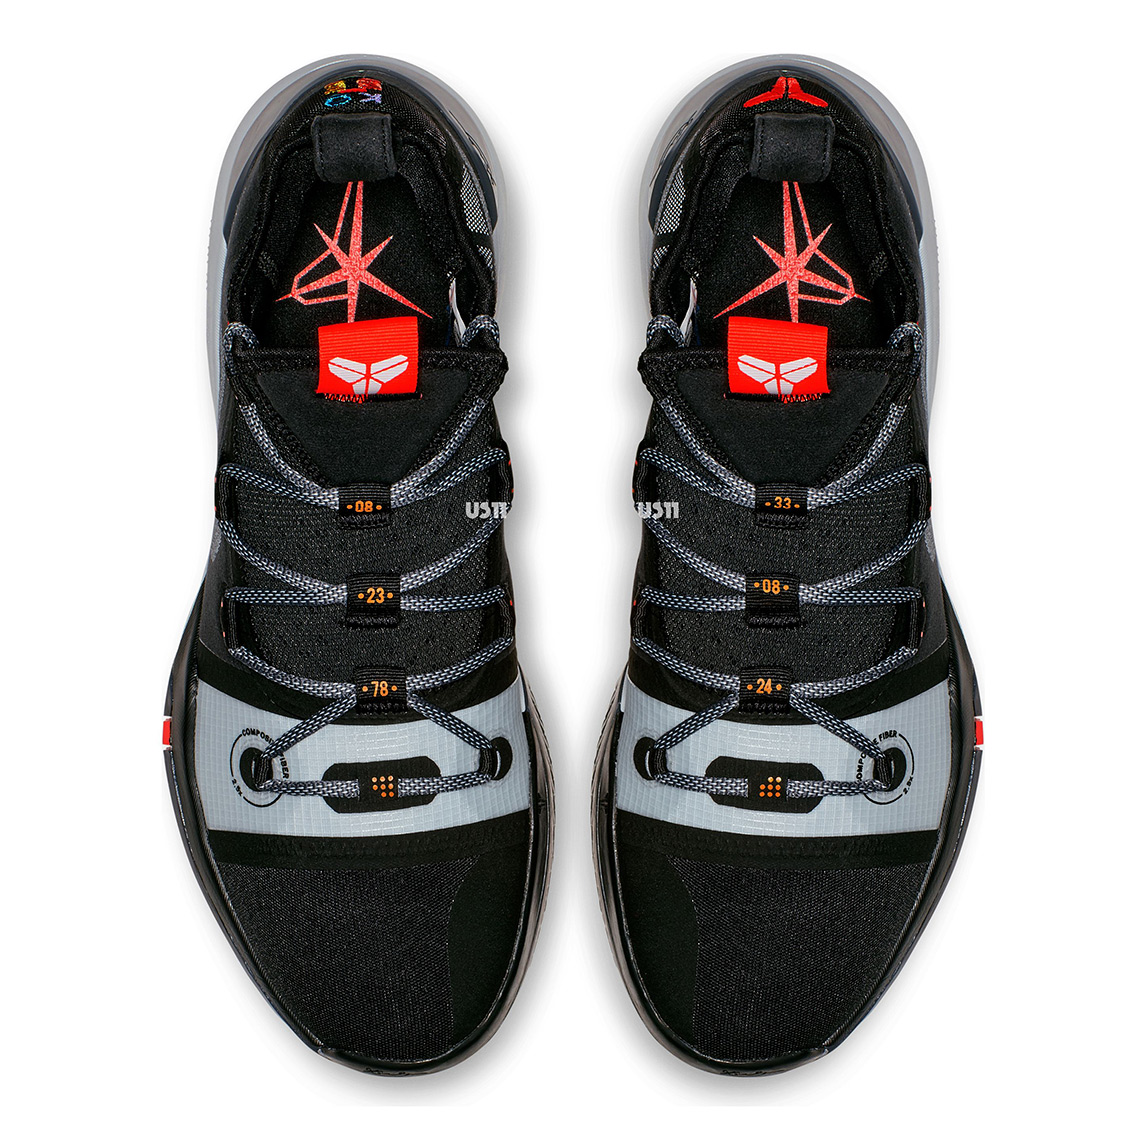 New Nike Kobe AD Shoe Black Grey AV3555 